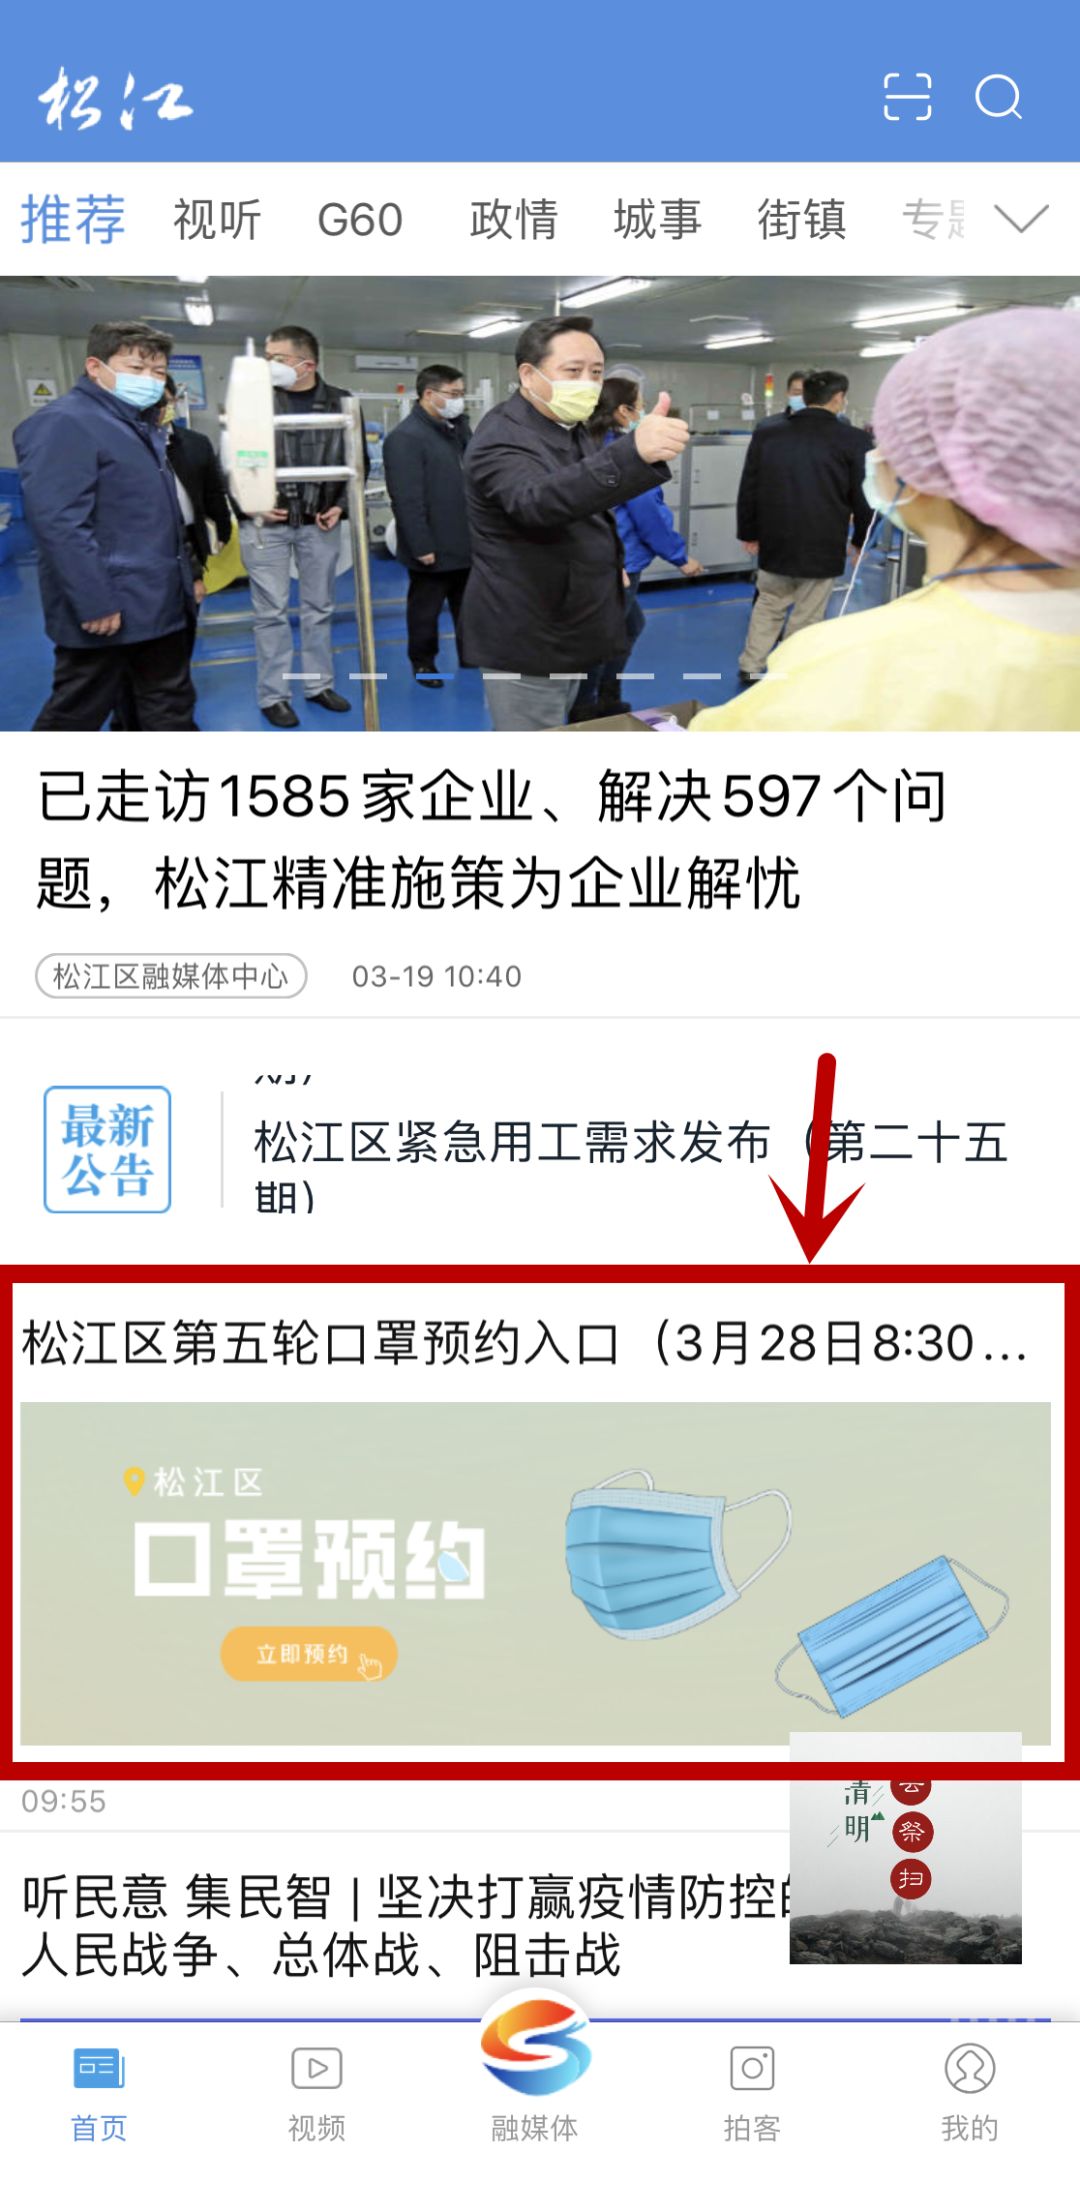 上海松江第五轮口罩预约入口 附预约流程